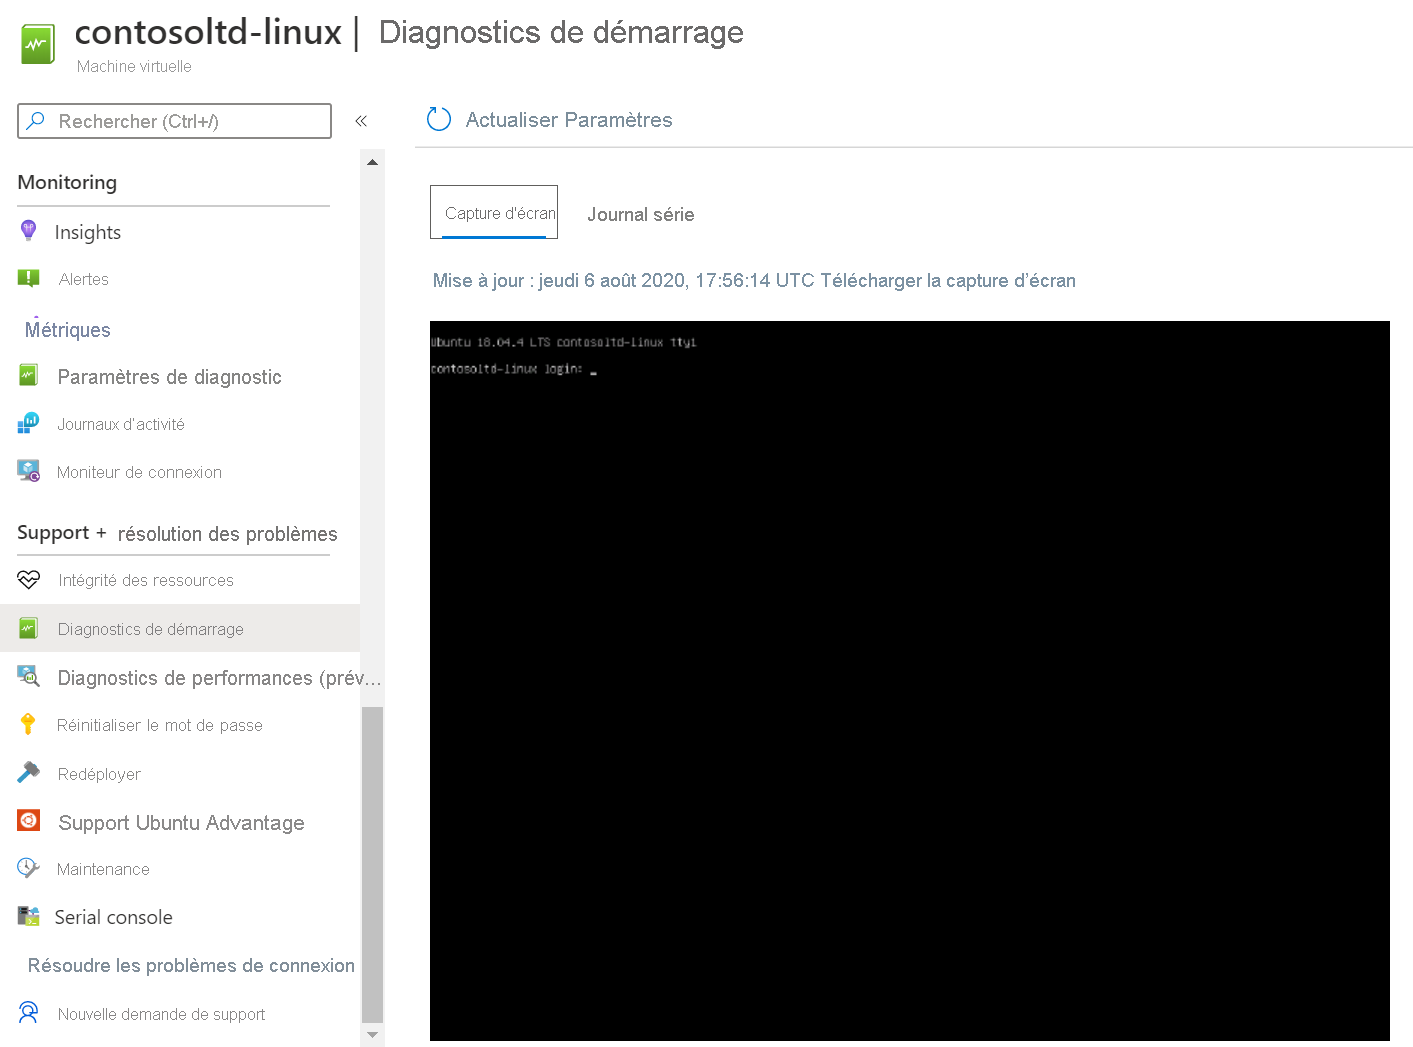 Capture d’écran des diagnostics de démarrage Linux